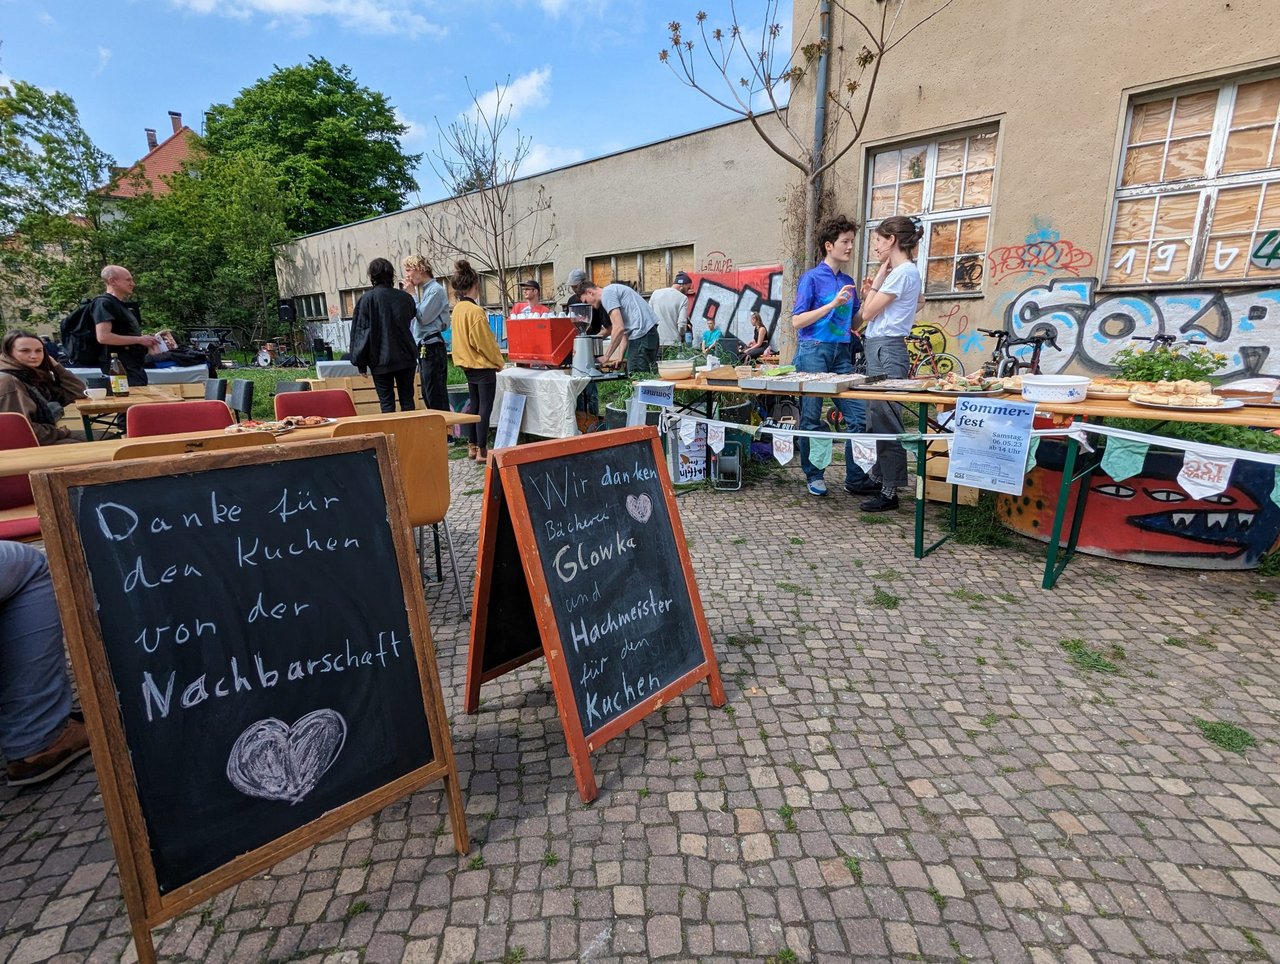 Blick auf zwei Schilder beim Nachbarschaftsfest. Auf dem linken Schild steht "Danke für den Kuchen von der Nachbarschaft" und auf dem rechten "Wir Danken Bücherei Glowka und Hachmeister für den Kuchen".